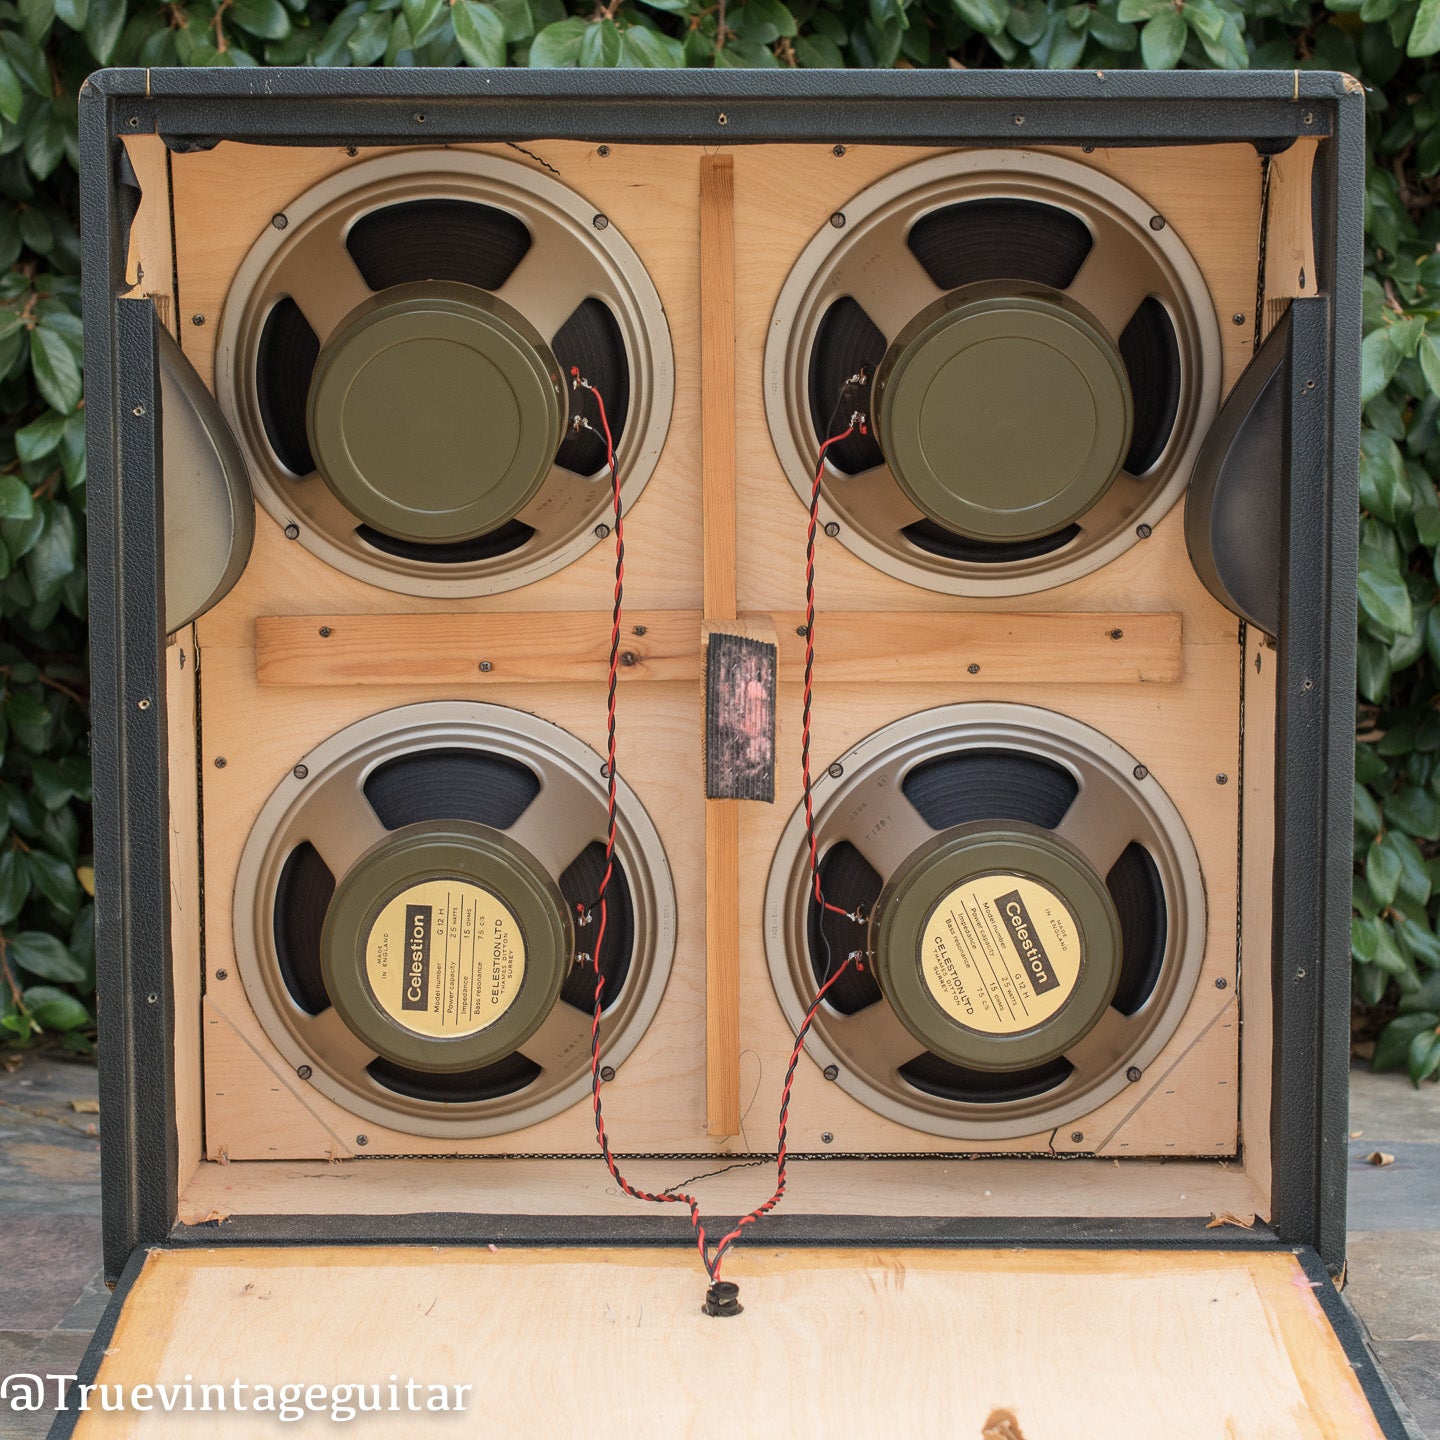 Inside cabinet, pre-Rola Celestion speakers, vintage 1968 Marshall cabinet model 1982a